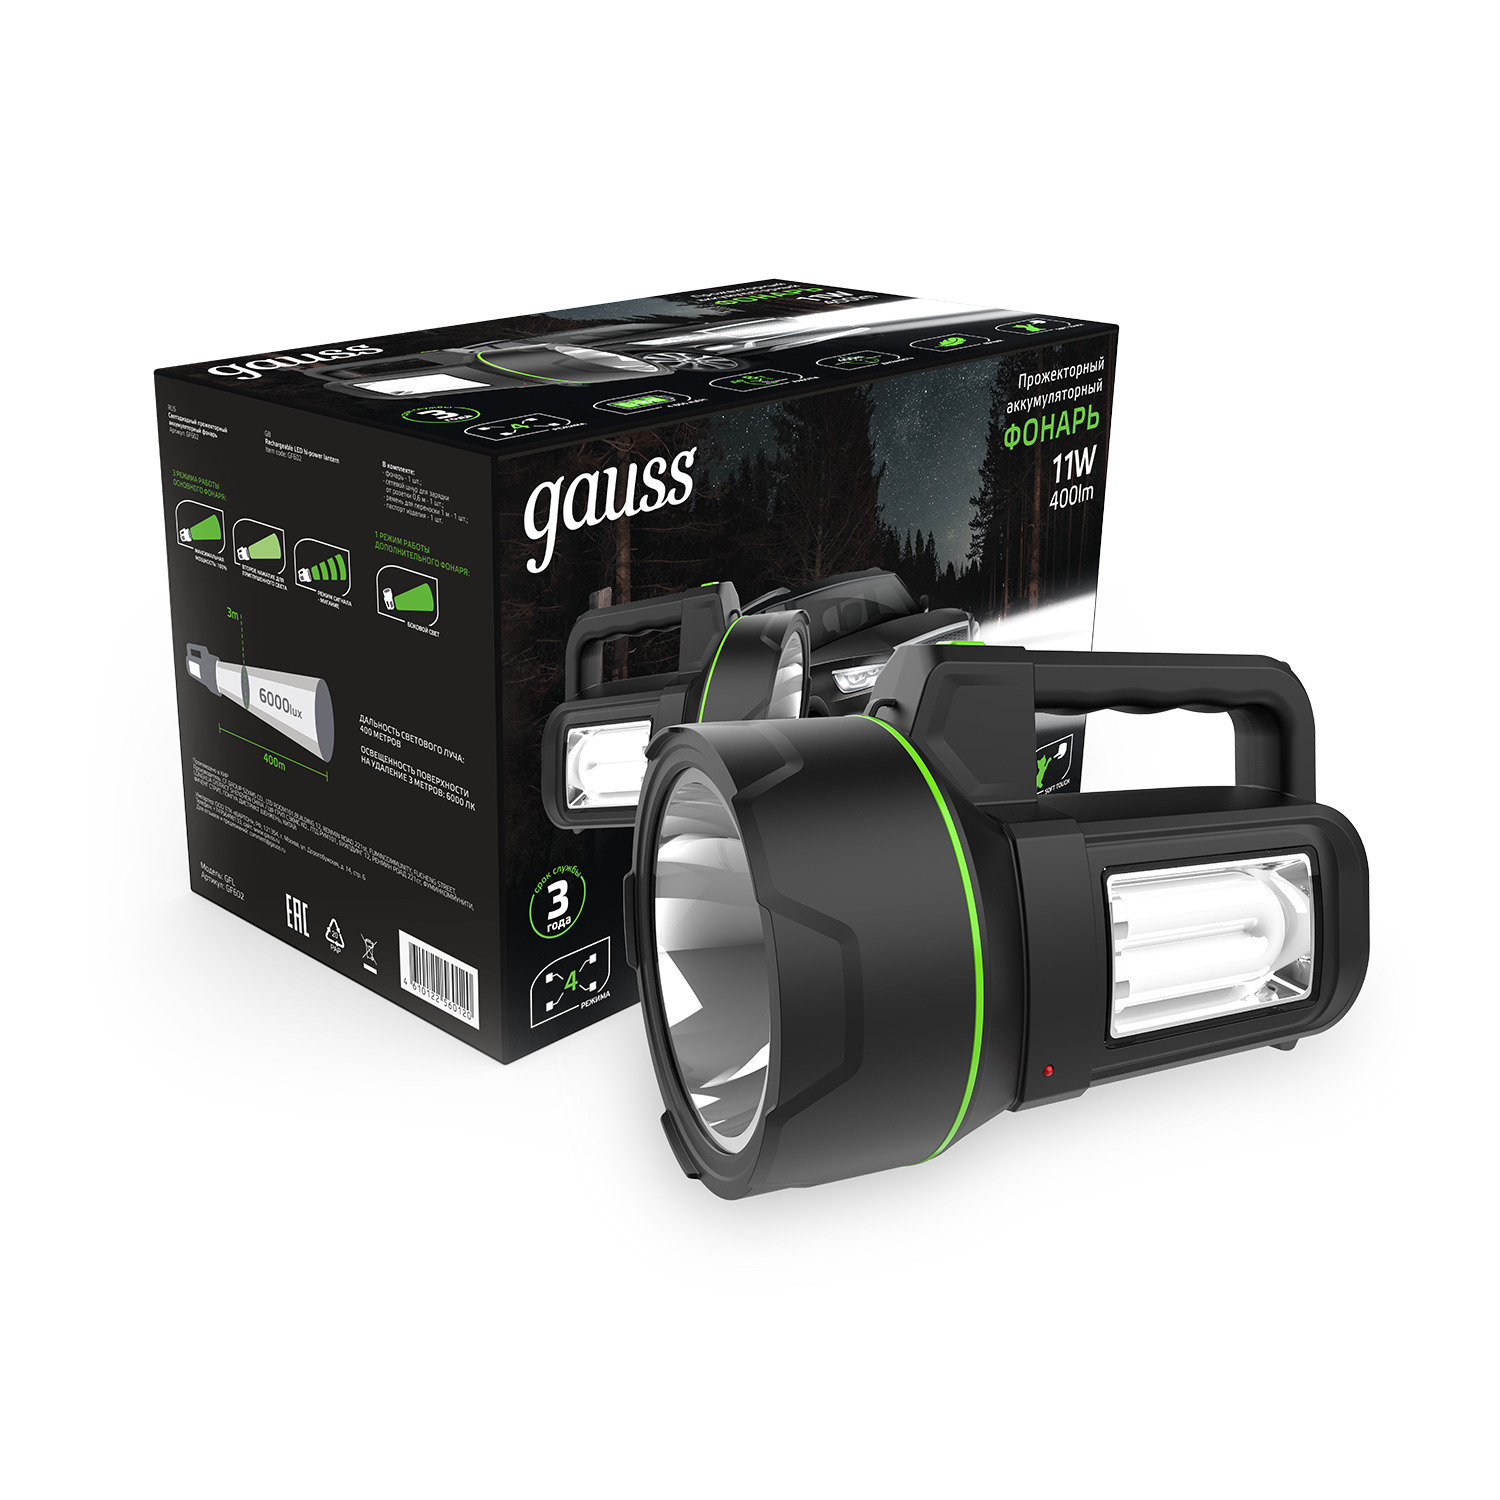 Фонарь Gauss прожекторный FL602 11W 400lm Li-ion 4800mAh LED прожекторный фонарь gauss gf601